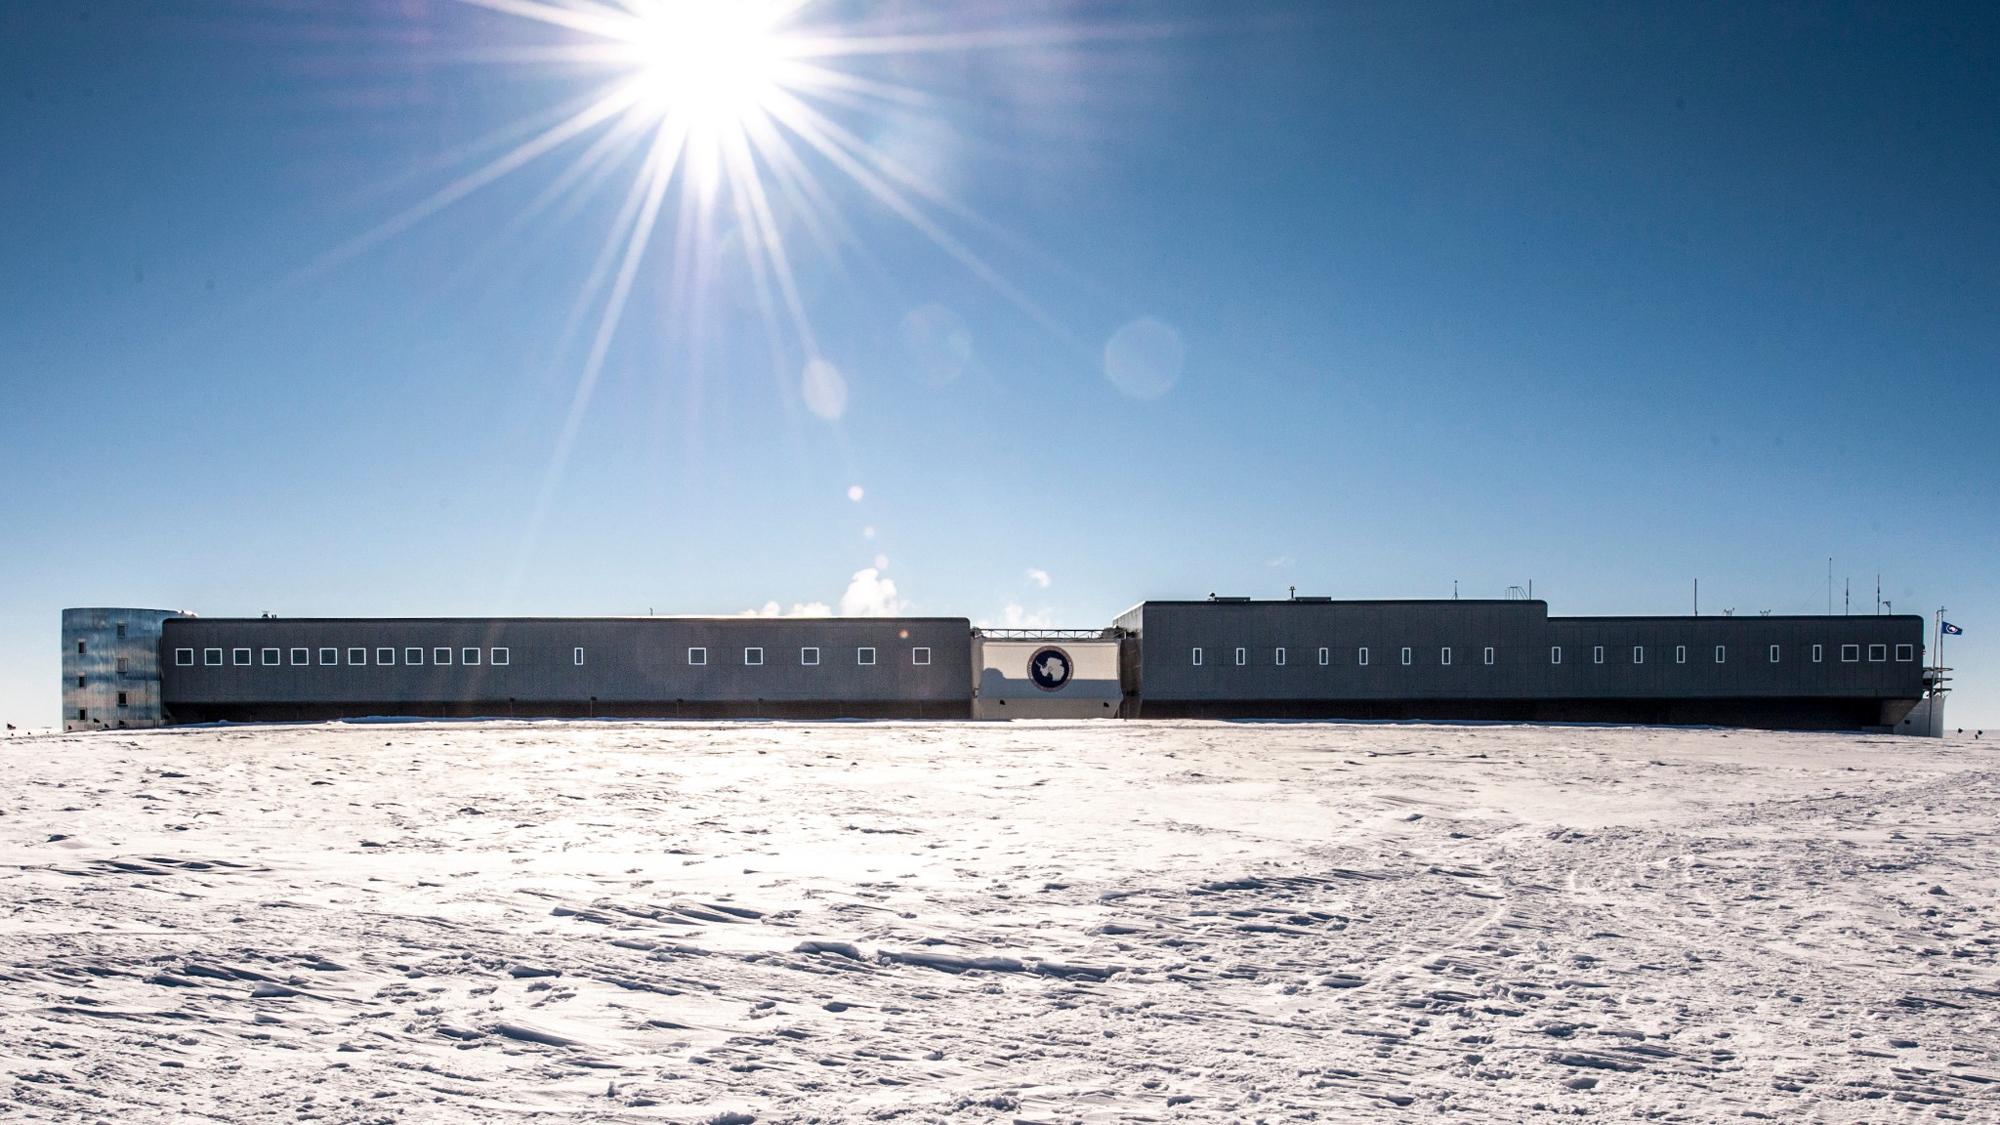 南极阿蒙森斯科特站图片